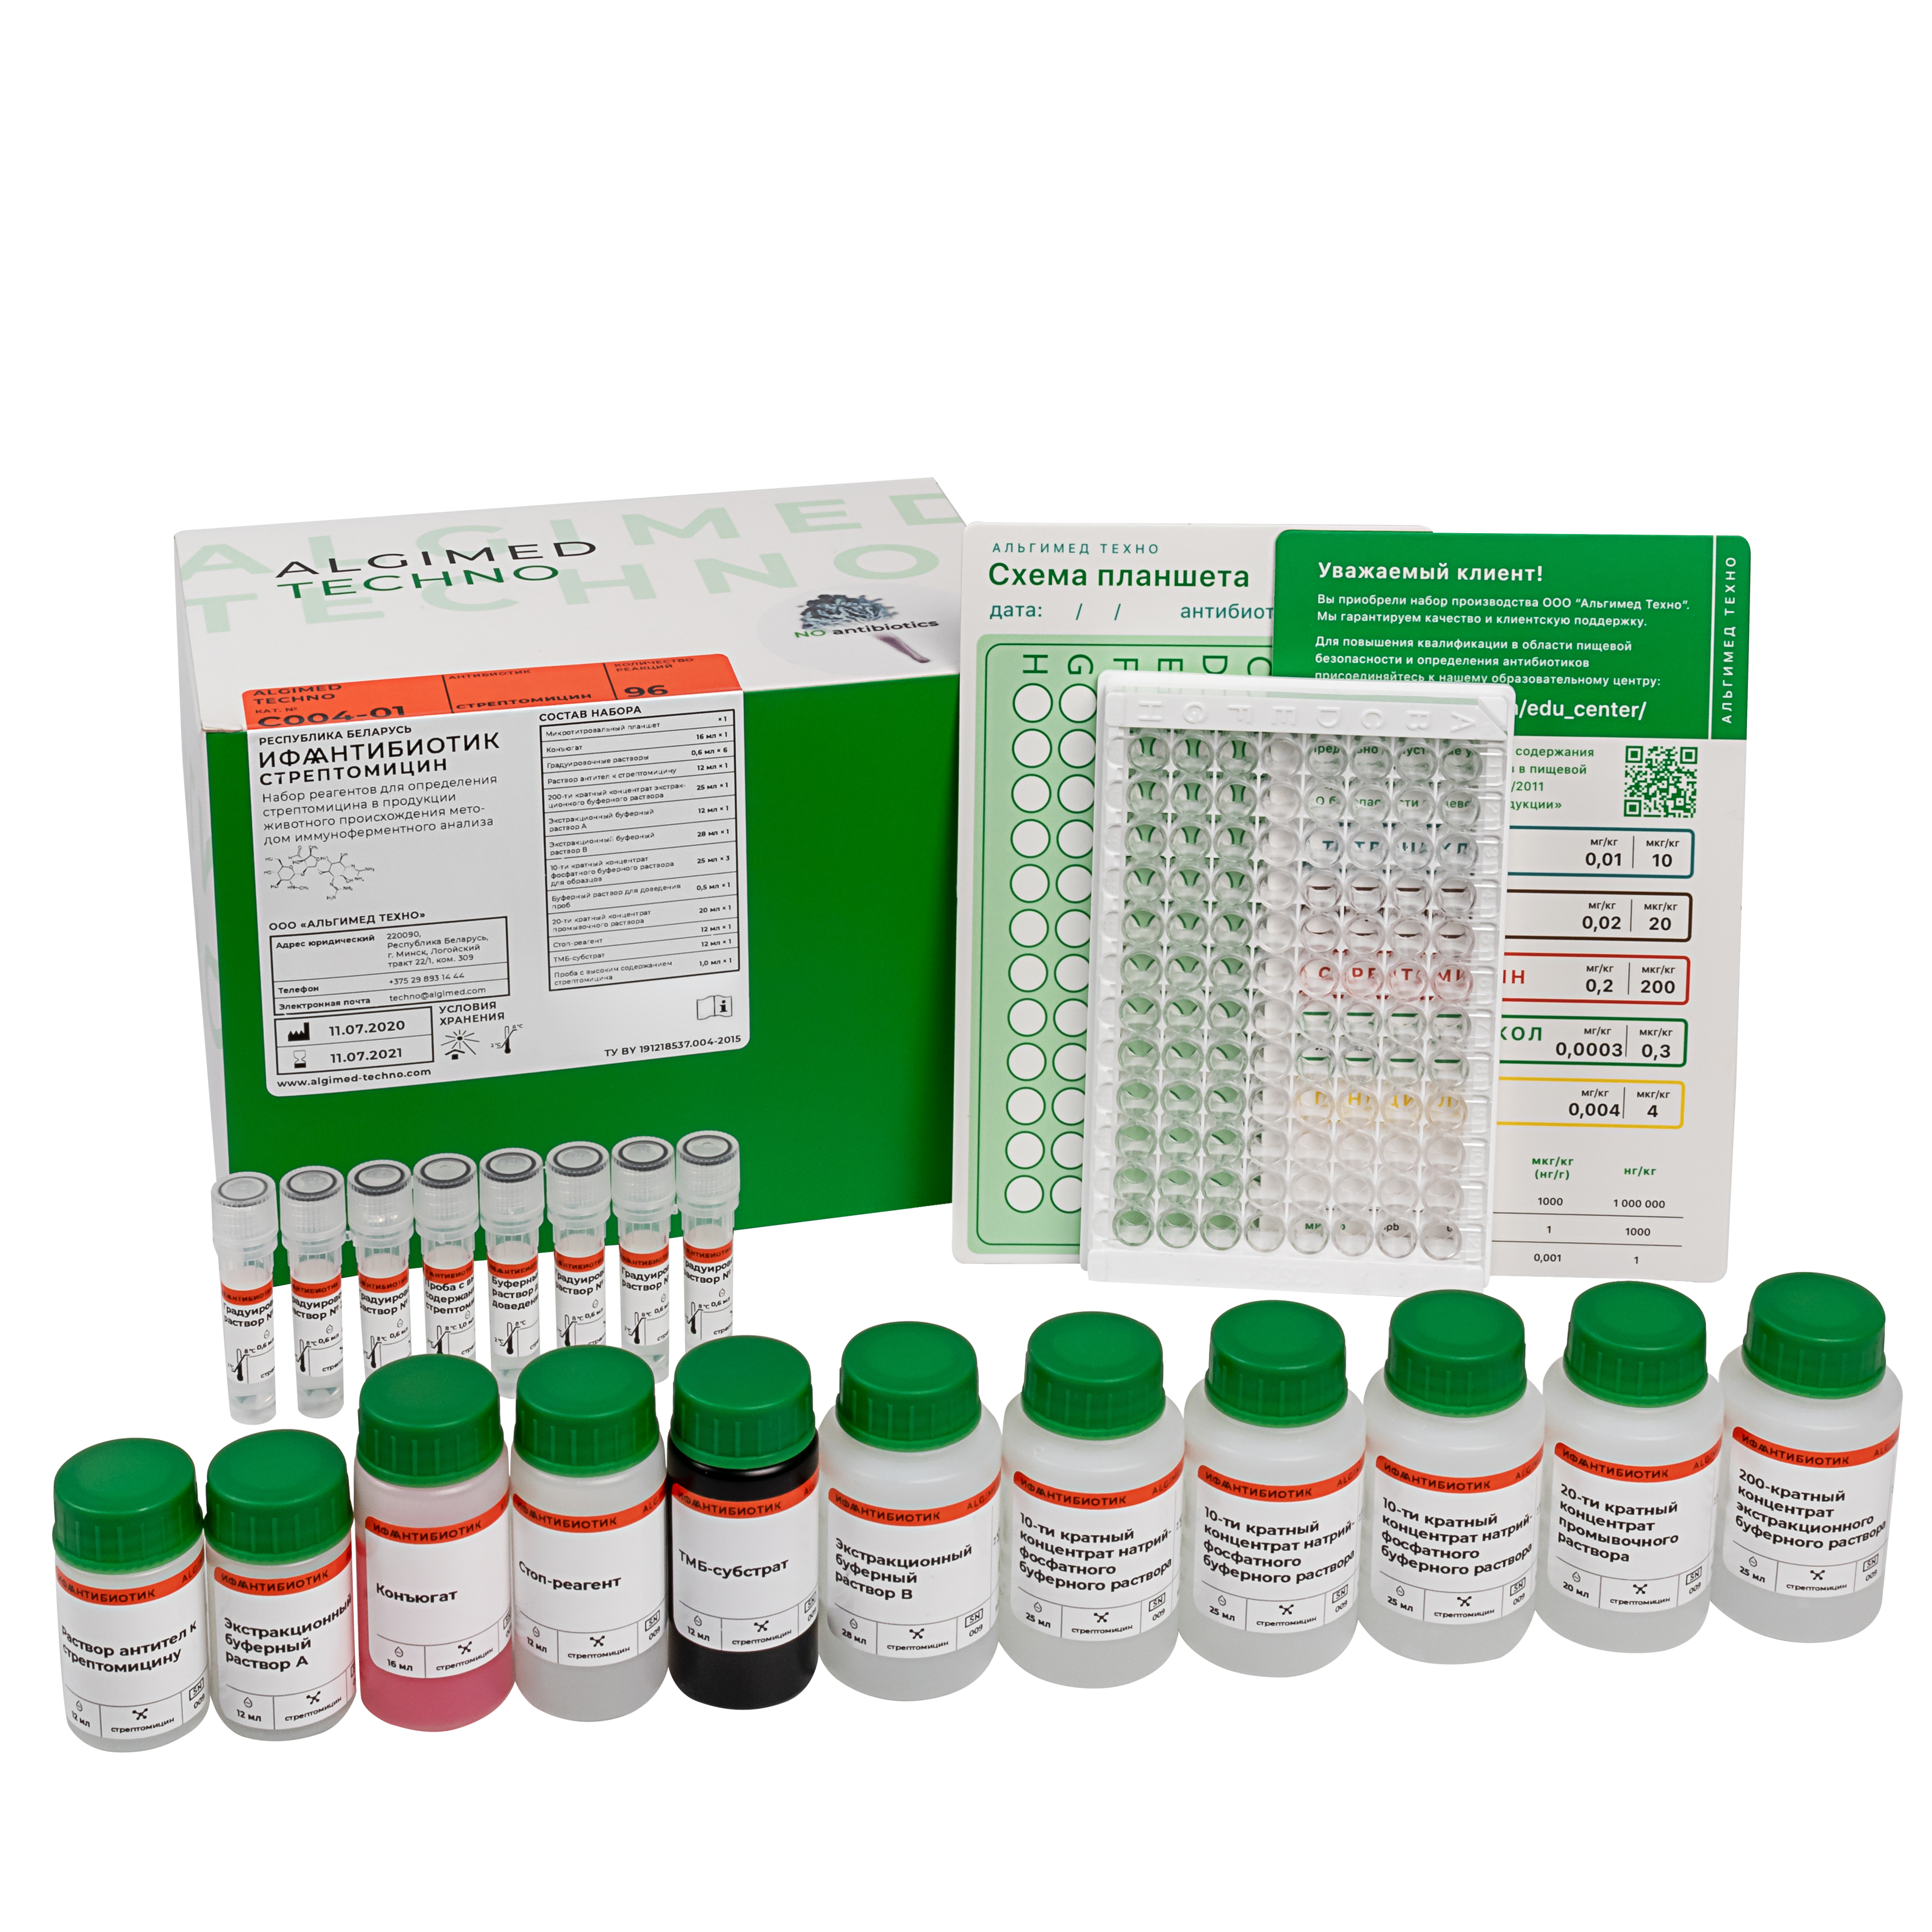 ELISA kit "ELISA antibiotique-streptomycine"